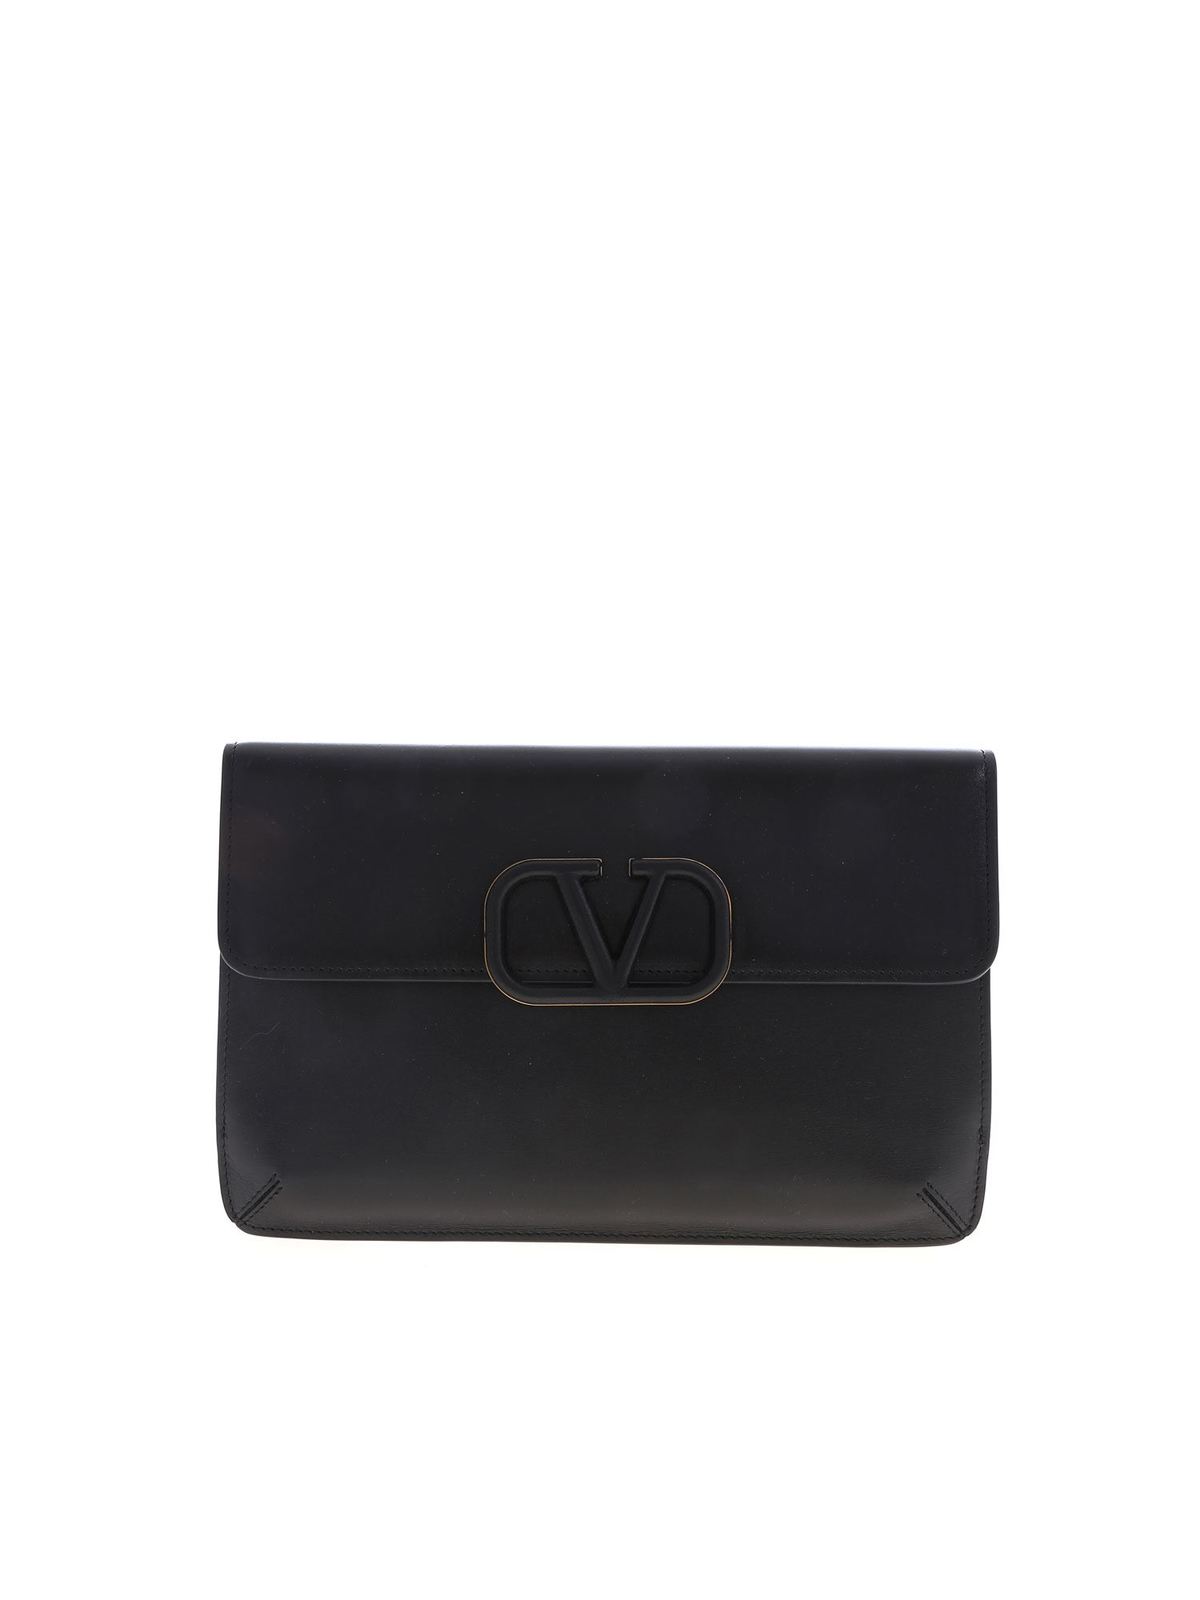 Valentino Garavani Vsling Clutch Bag In Black